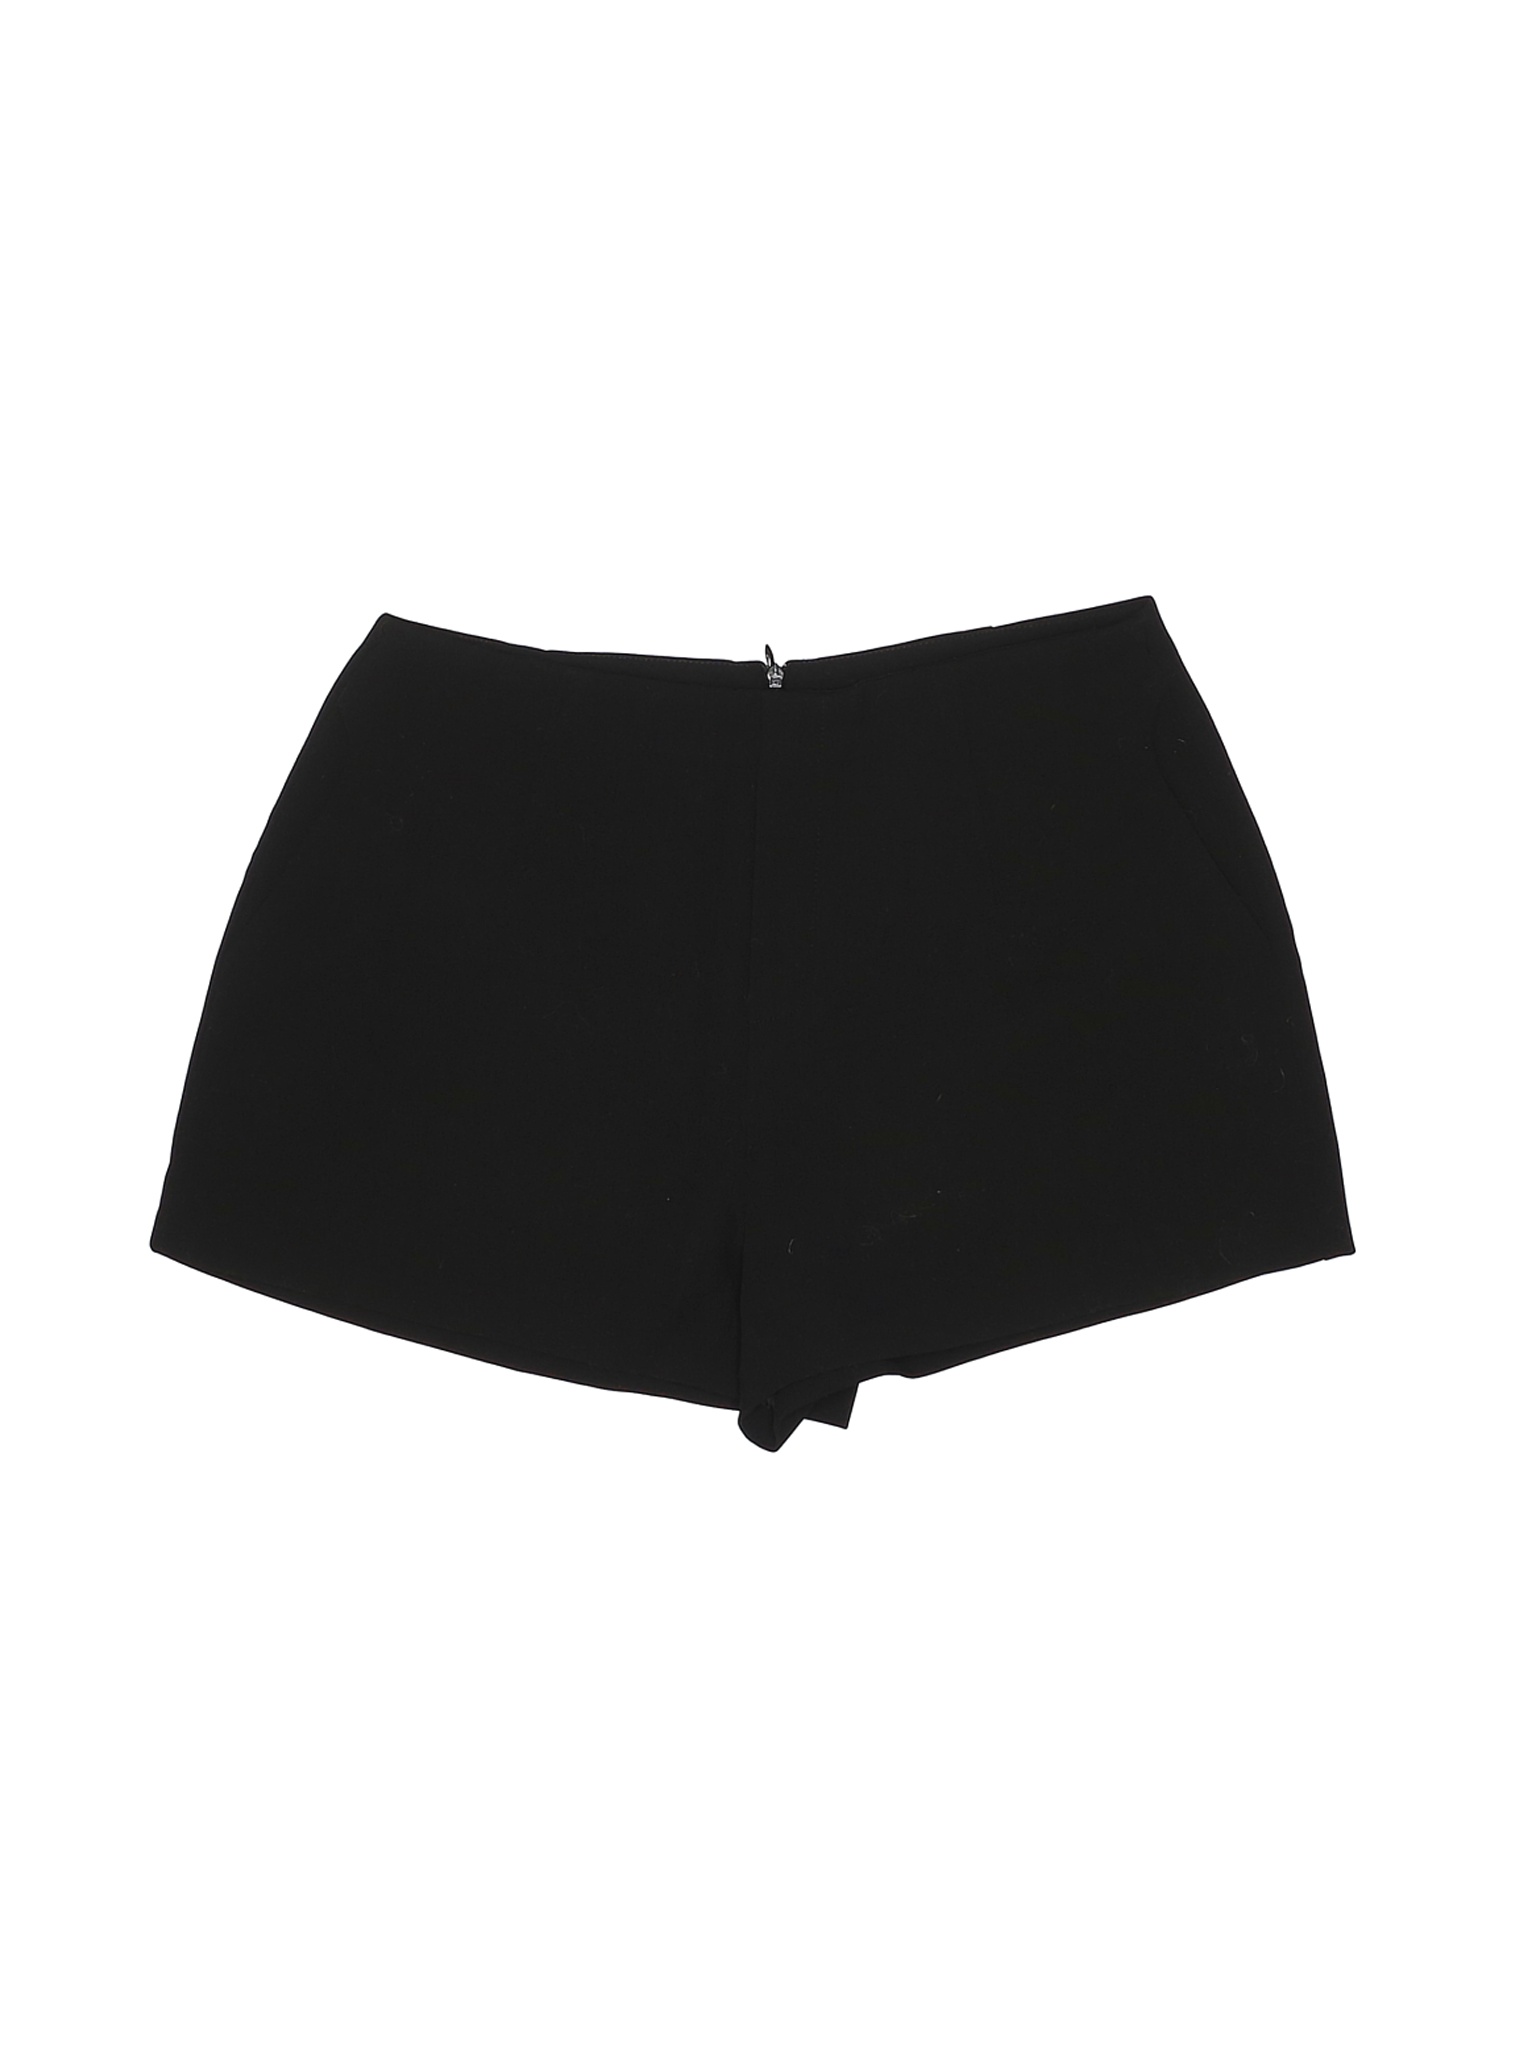 Unbranded Women Black Dressy Shorts XL | eBay